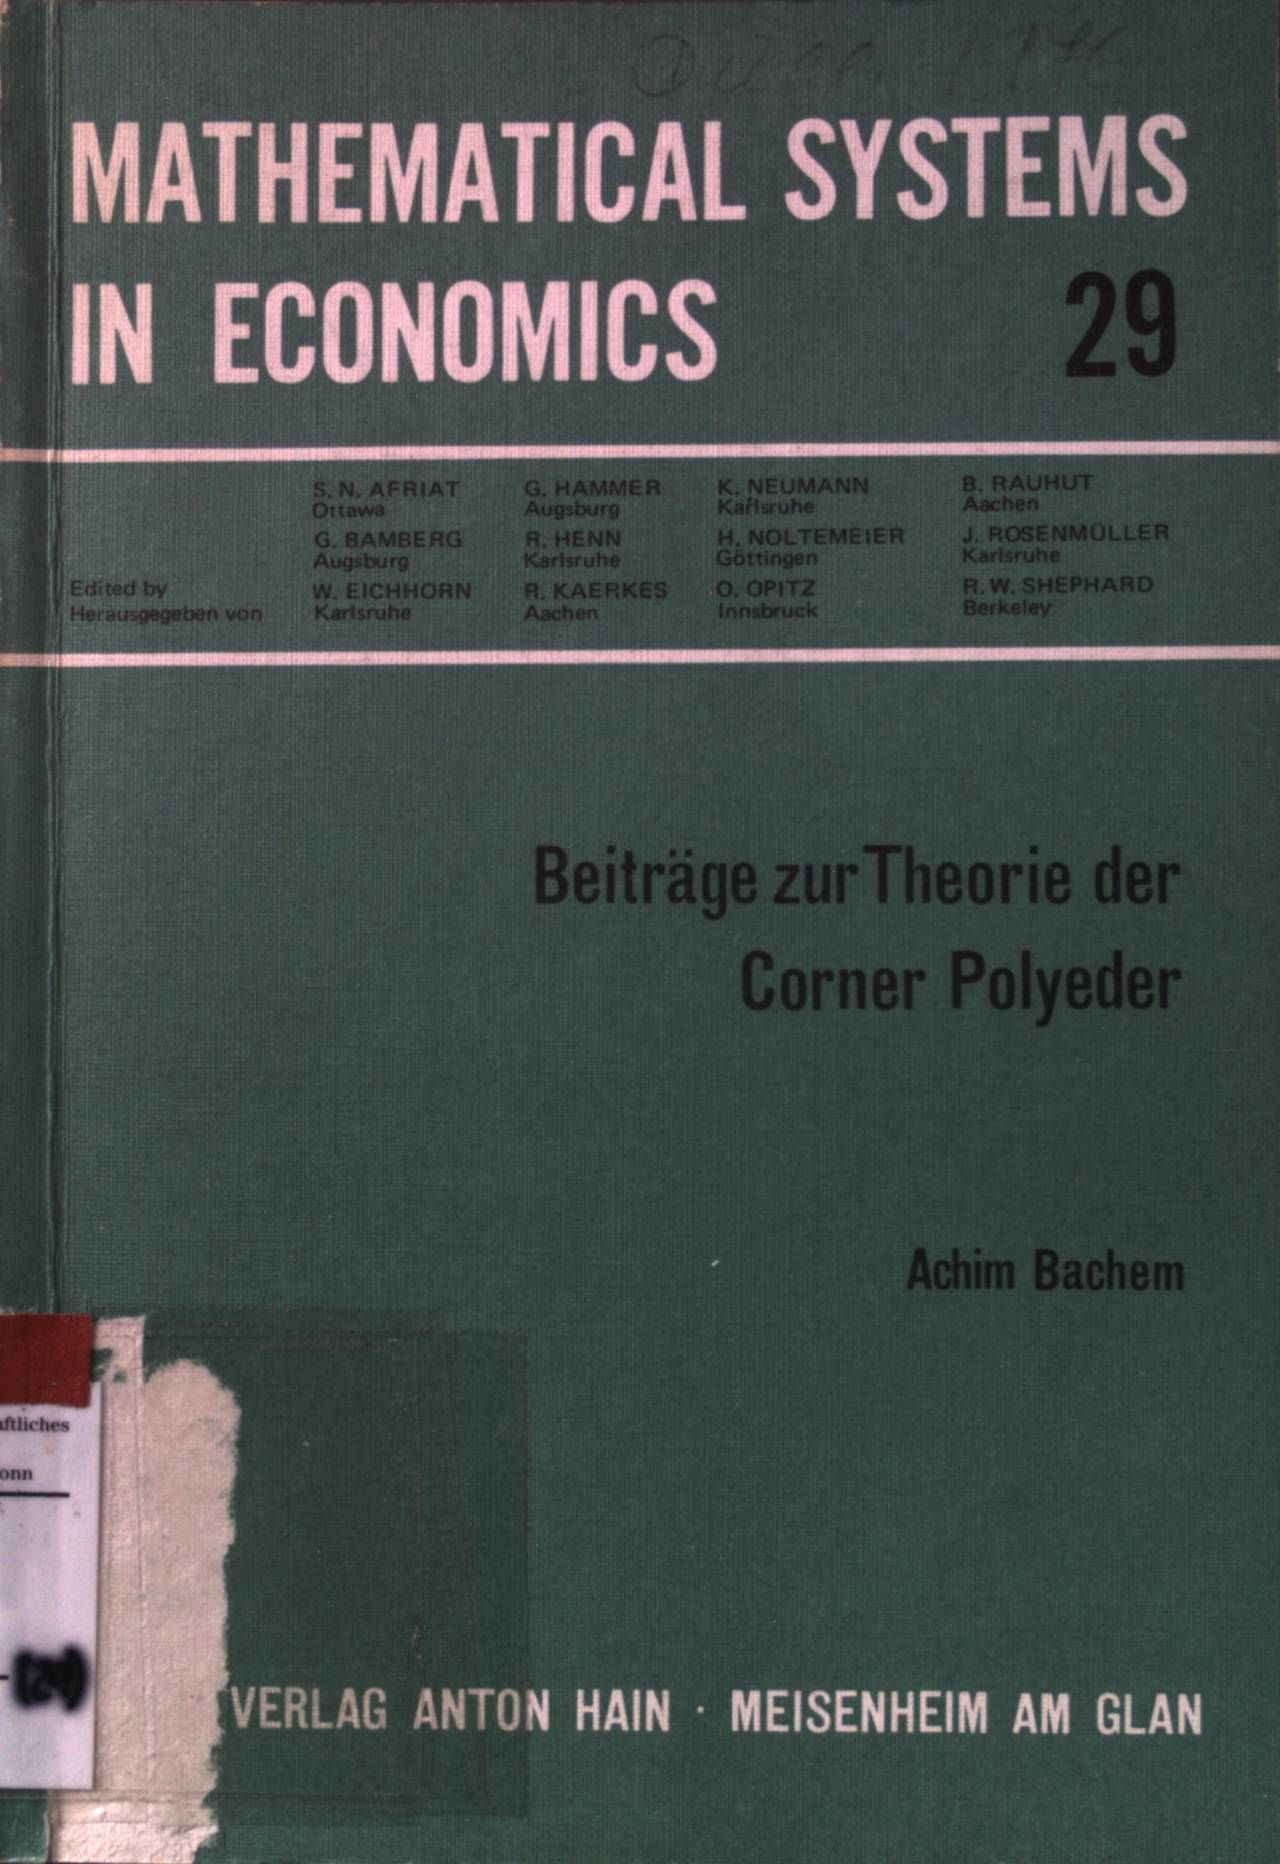 Beiträge zur Theorie der Corner Polyeder. Mathematical systems in economics  29 - Bachem, Achim, S. N Afriat G. Bamberg u. a.